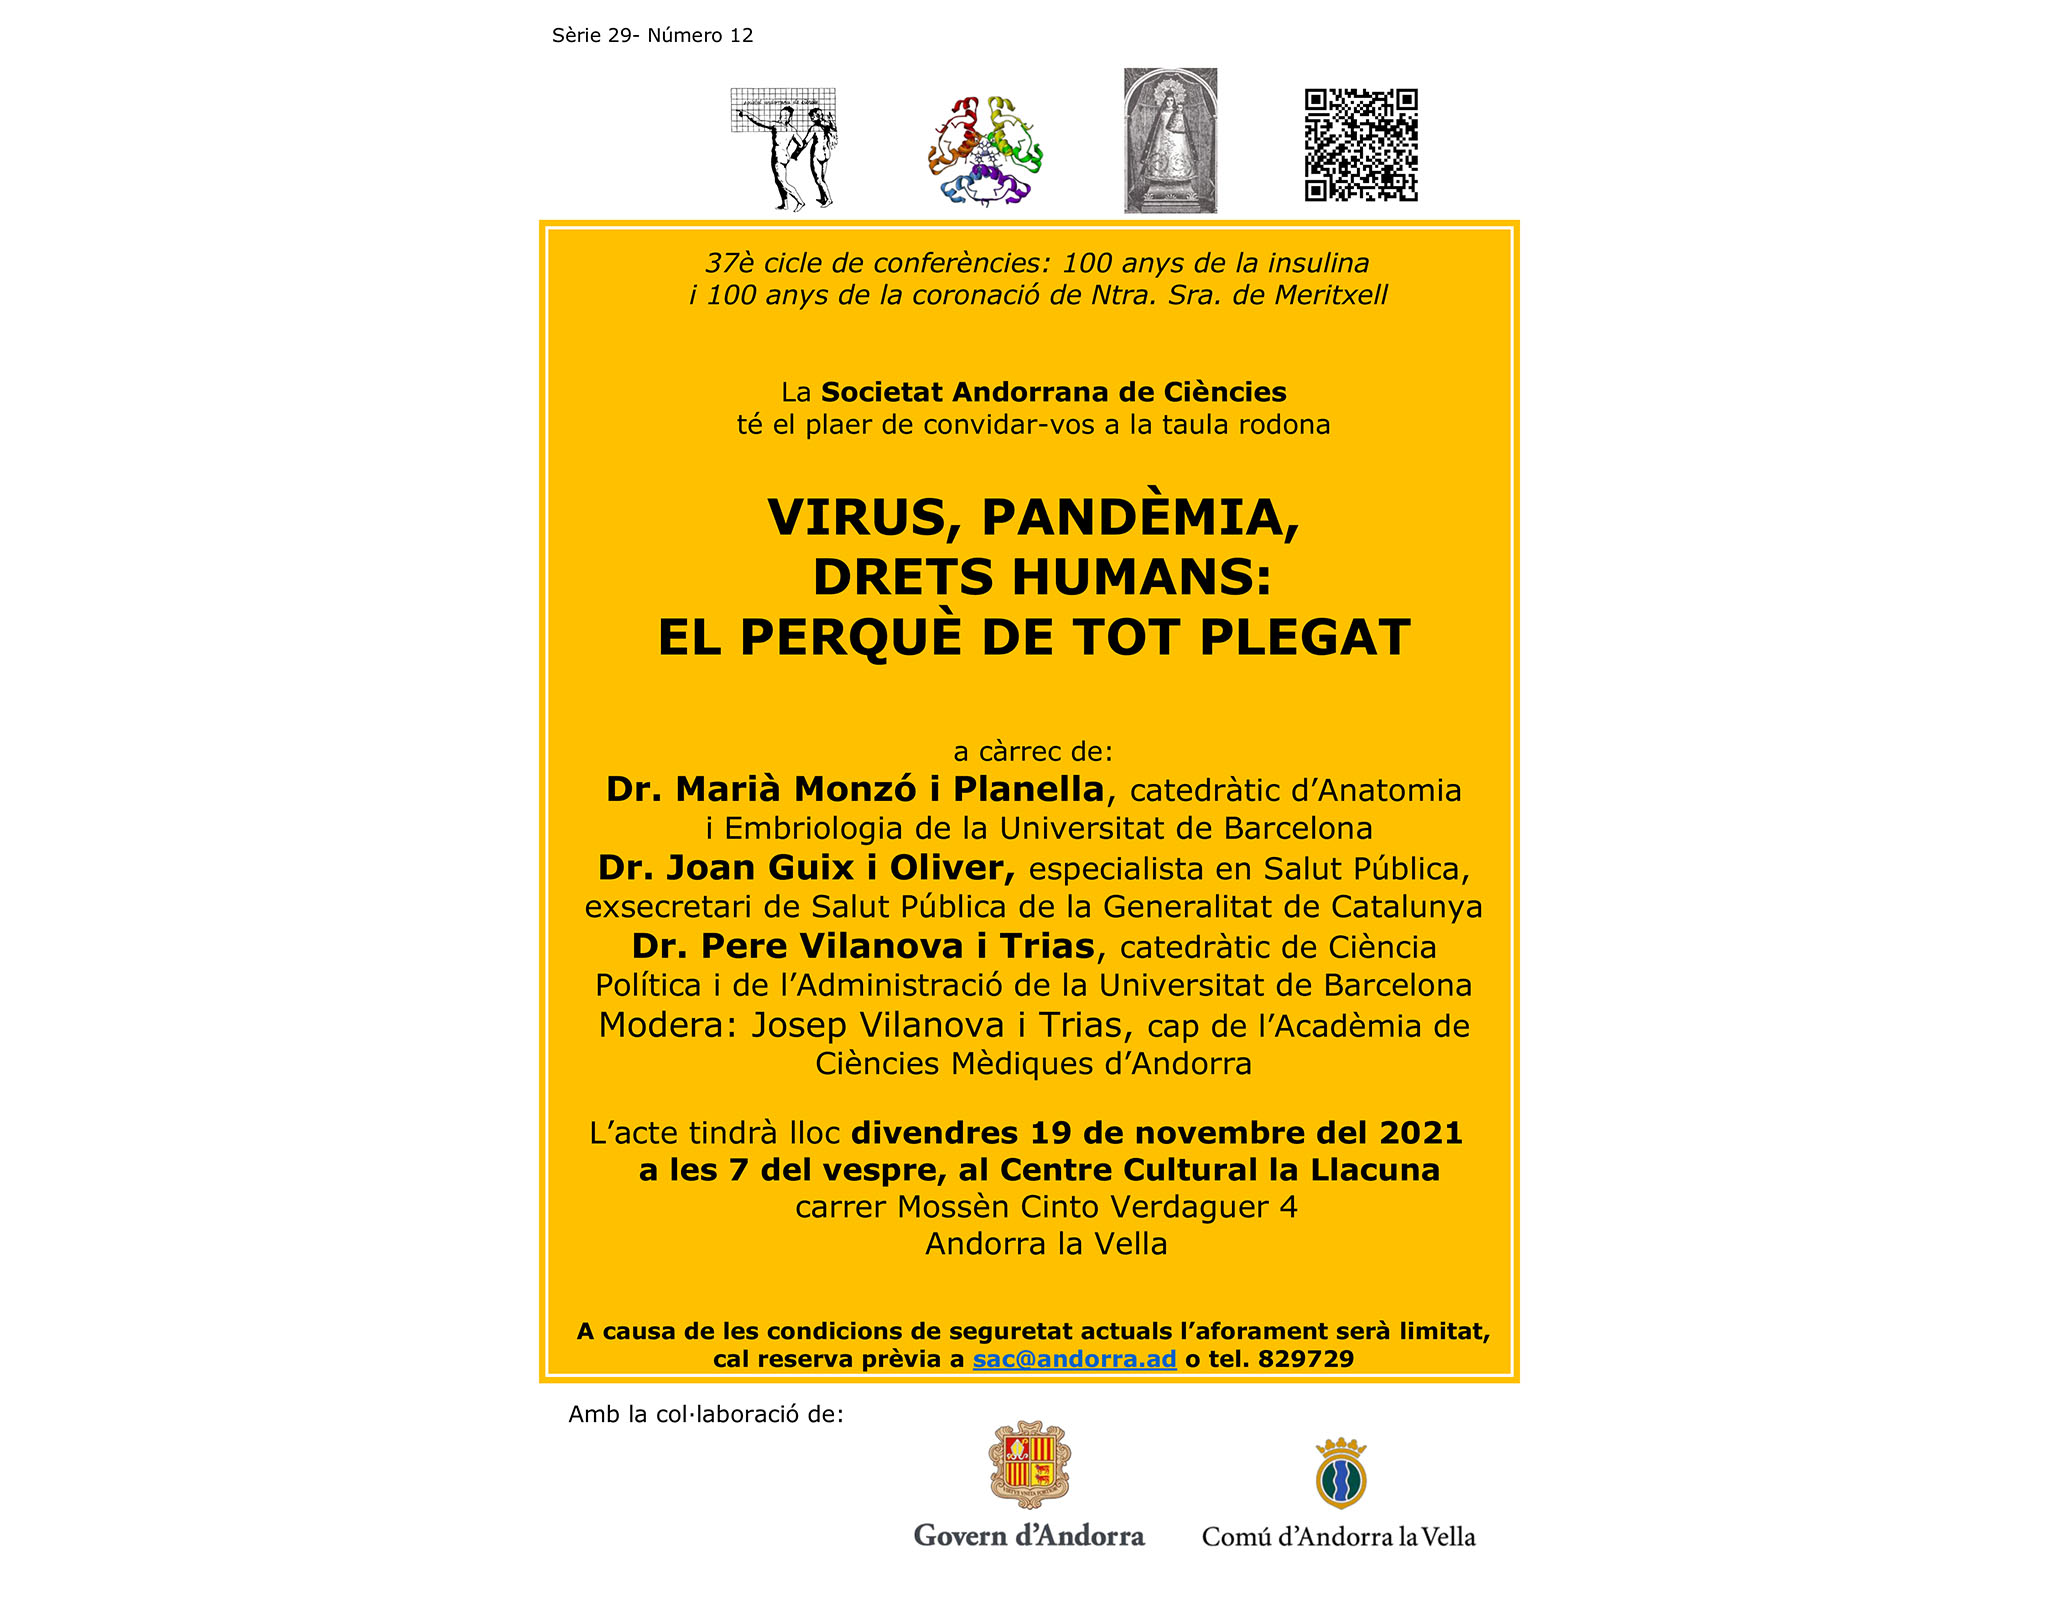 La SAC organitza la taula rodona "Virus, pandèmia, drets humans: el perquè de tot plegat"